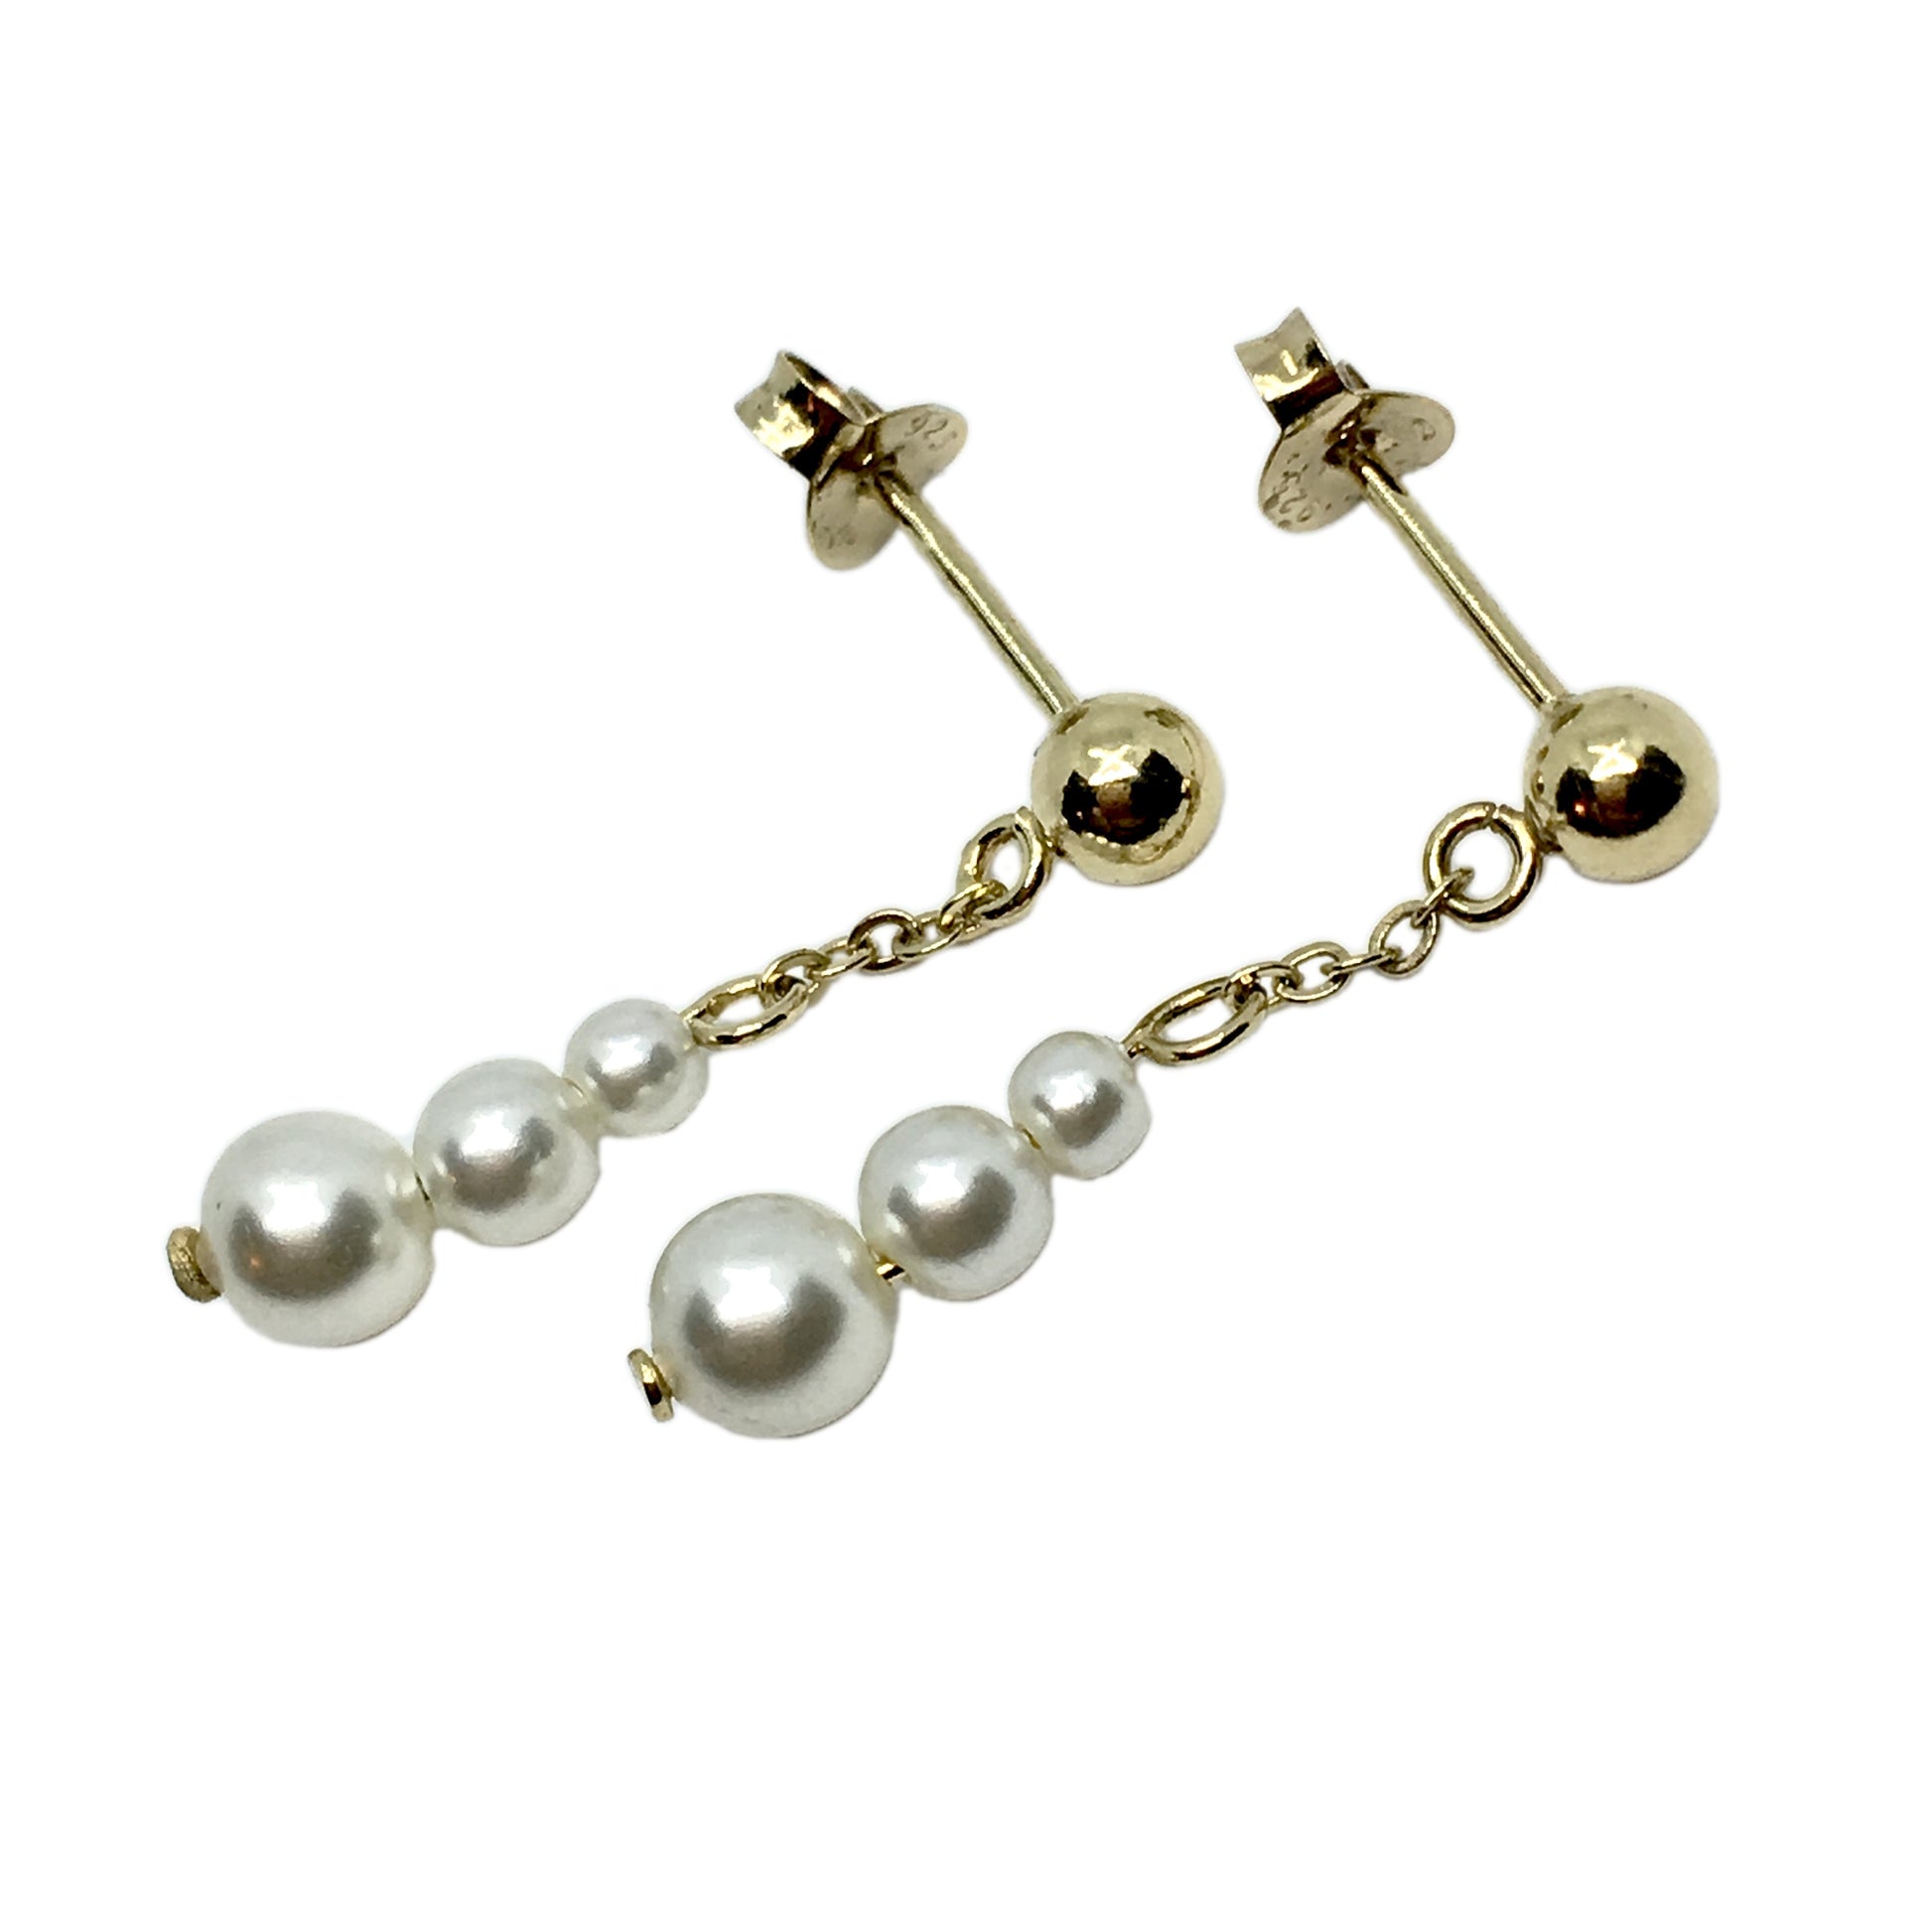 Earrings - Womens used Gold Sterling Silver Graduating White Pearl Dangle Earrings - Blingschlingers.com online USA